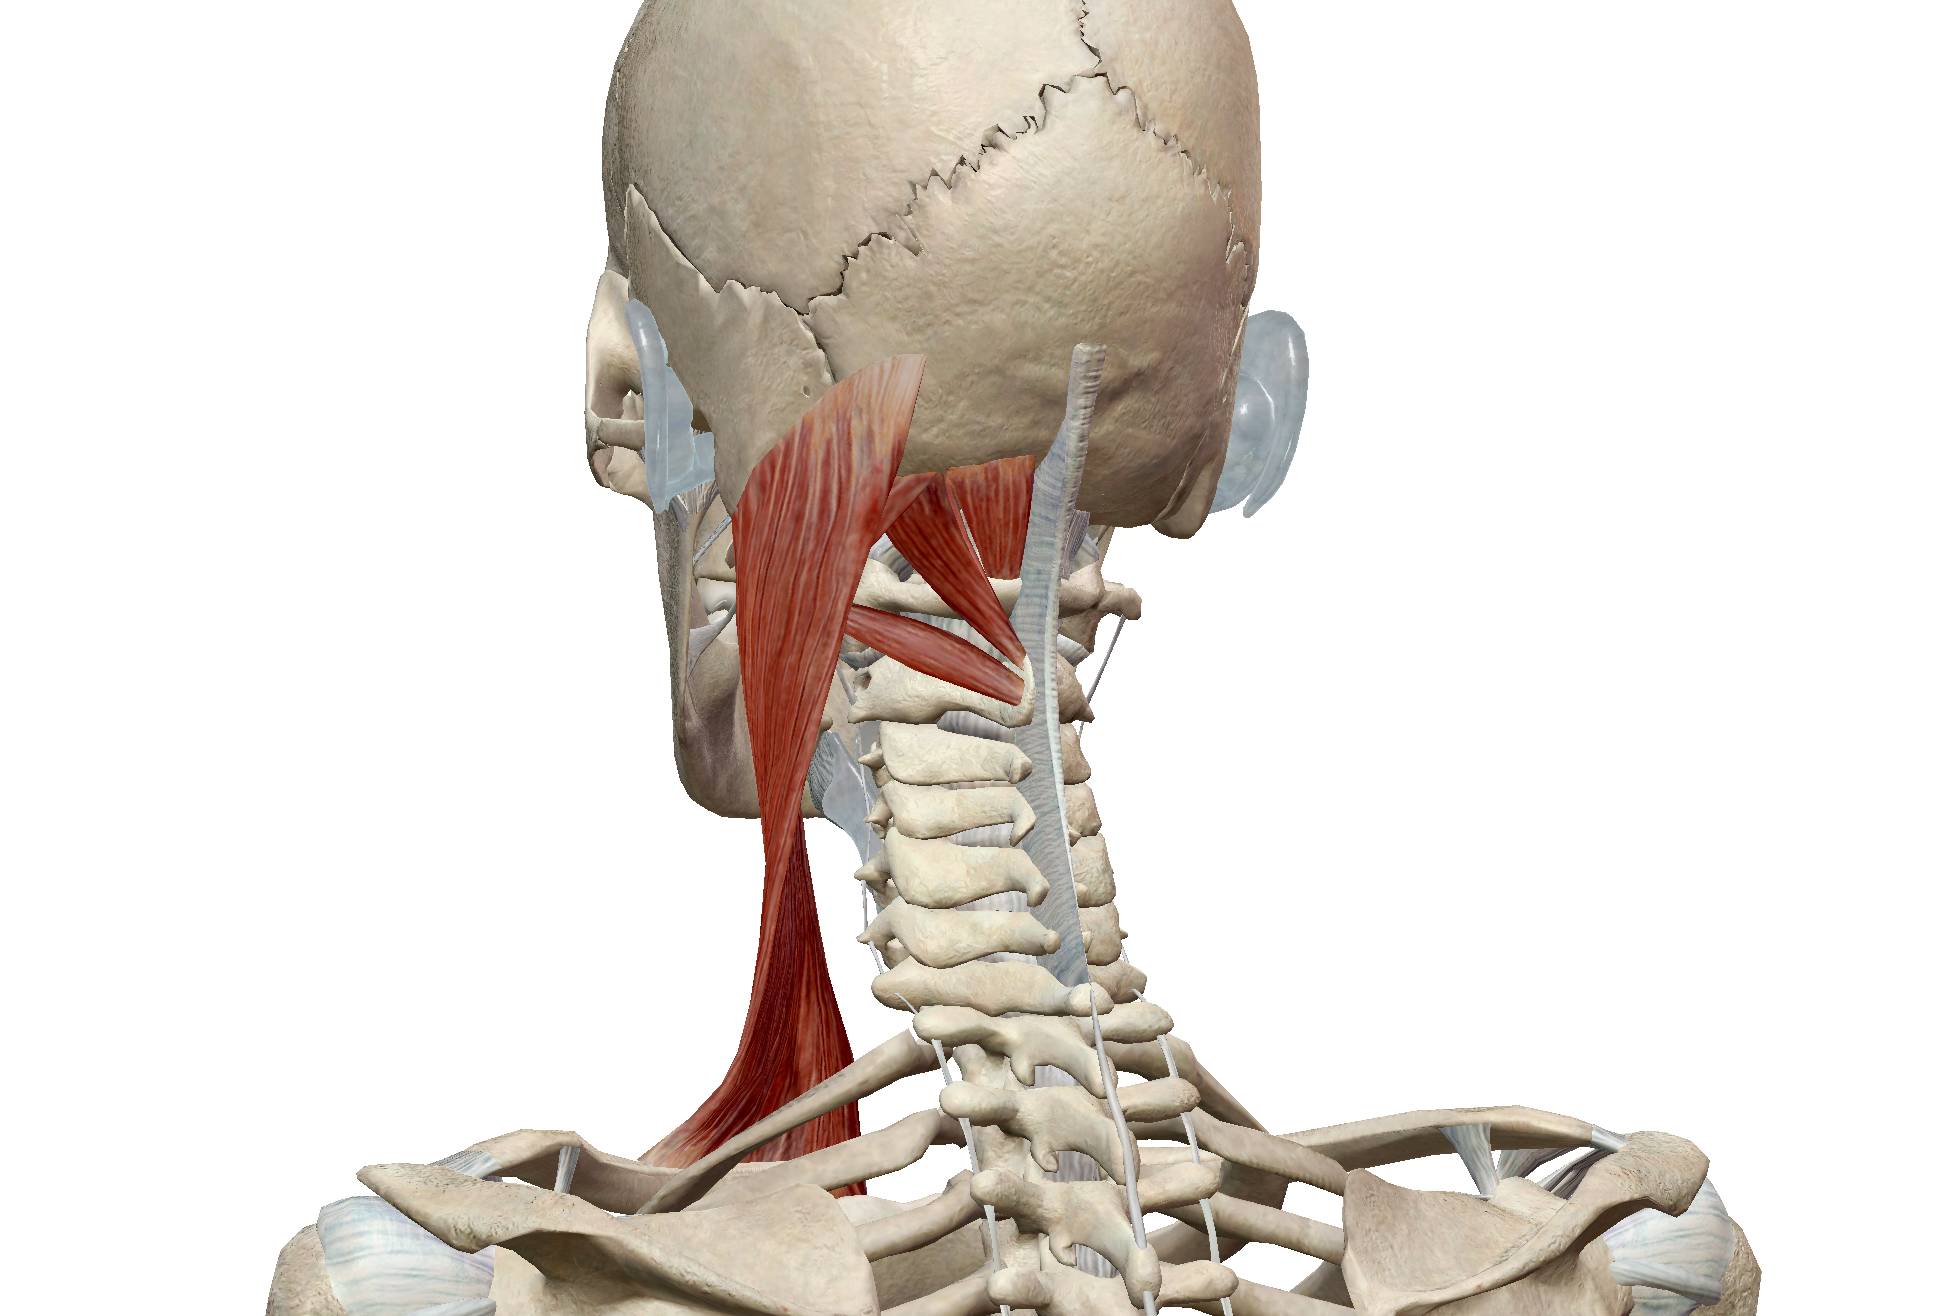 脖颈结构图片